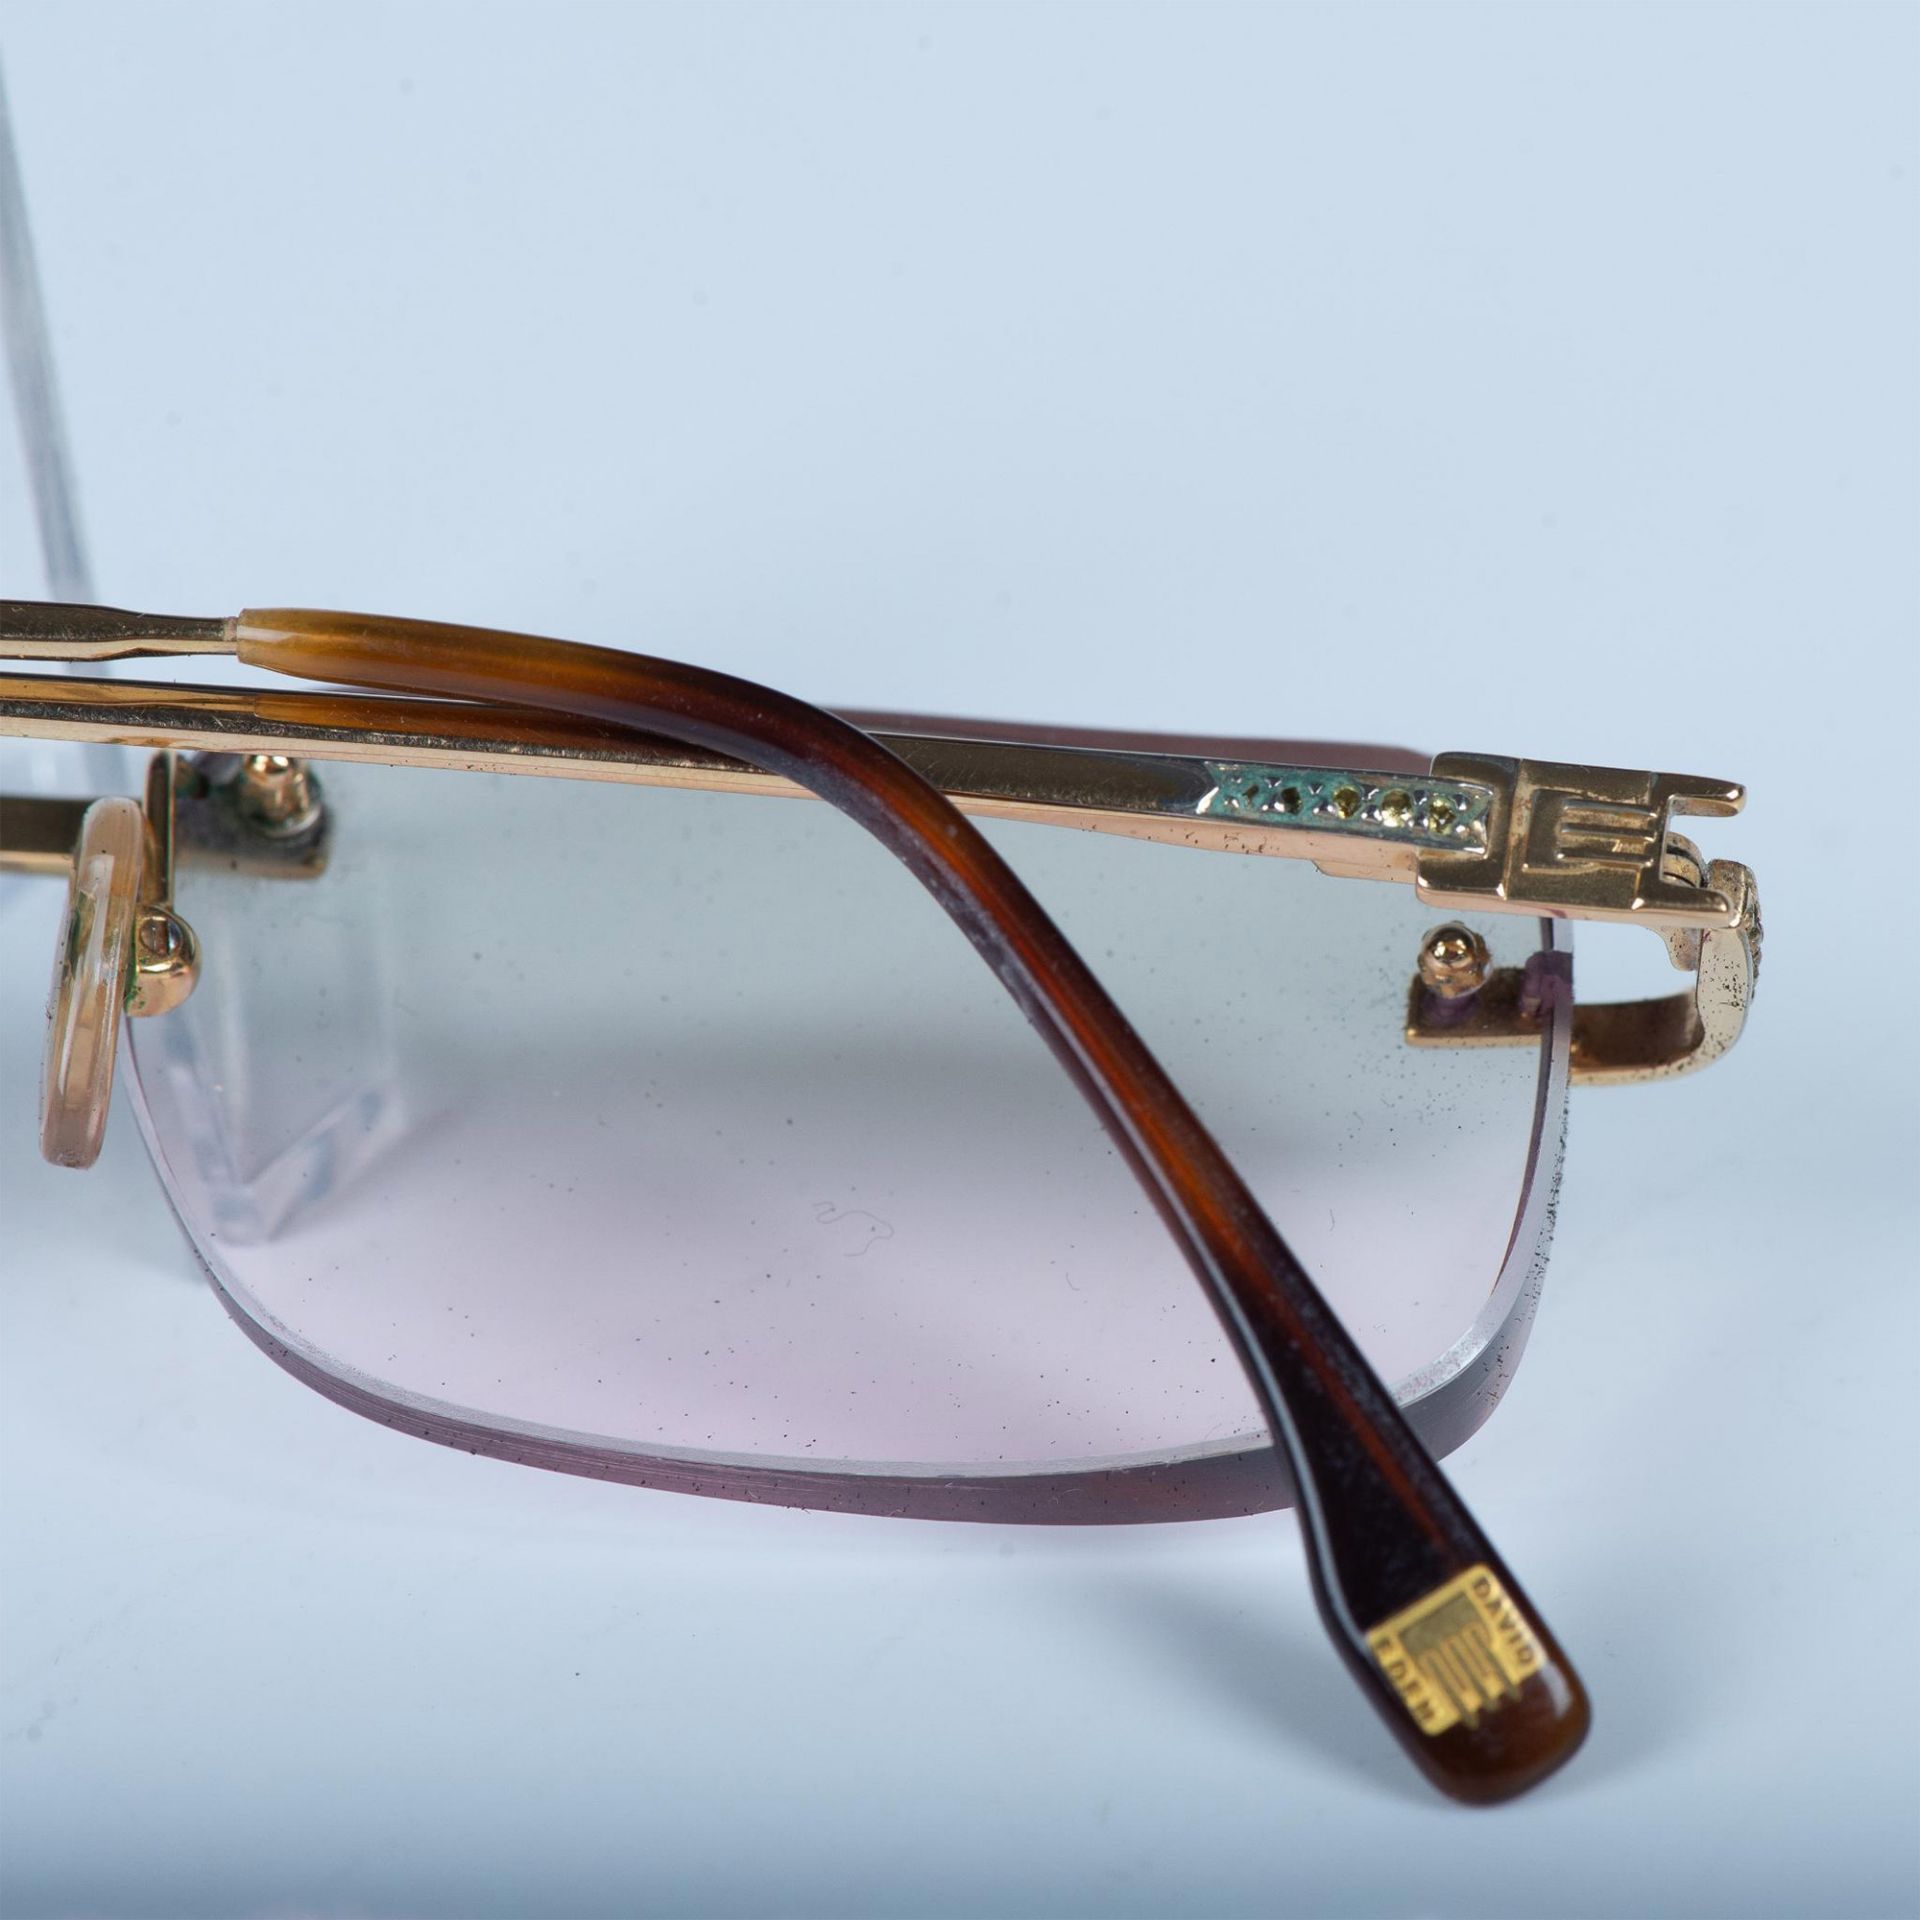 David Eden Eyeglass Frames - Image 6 of 9